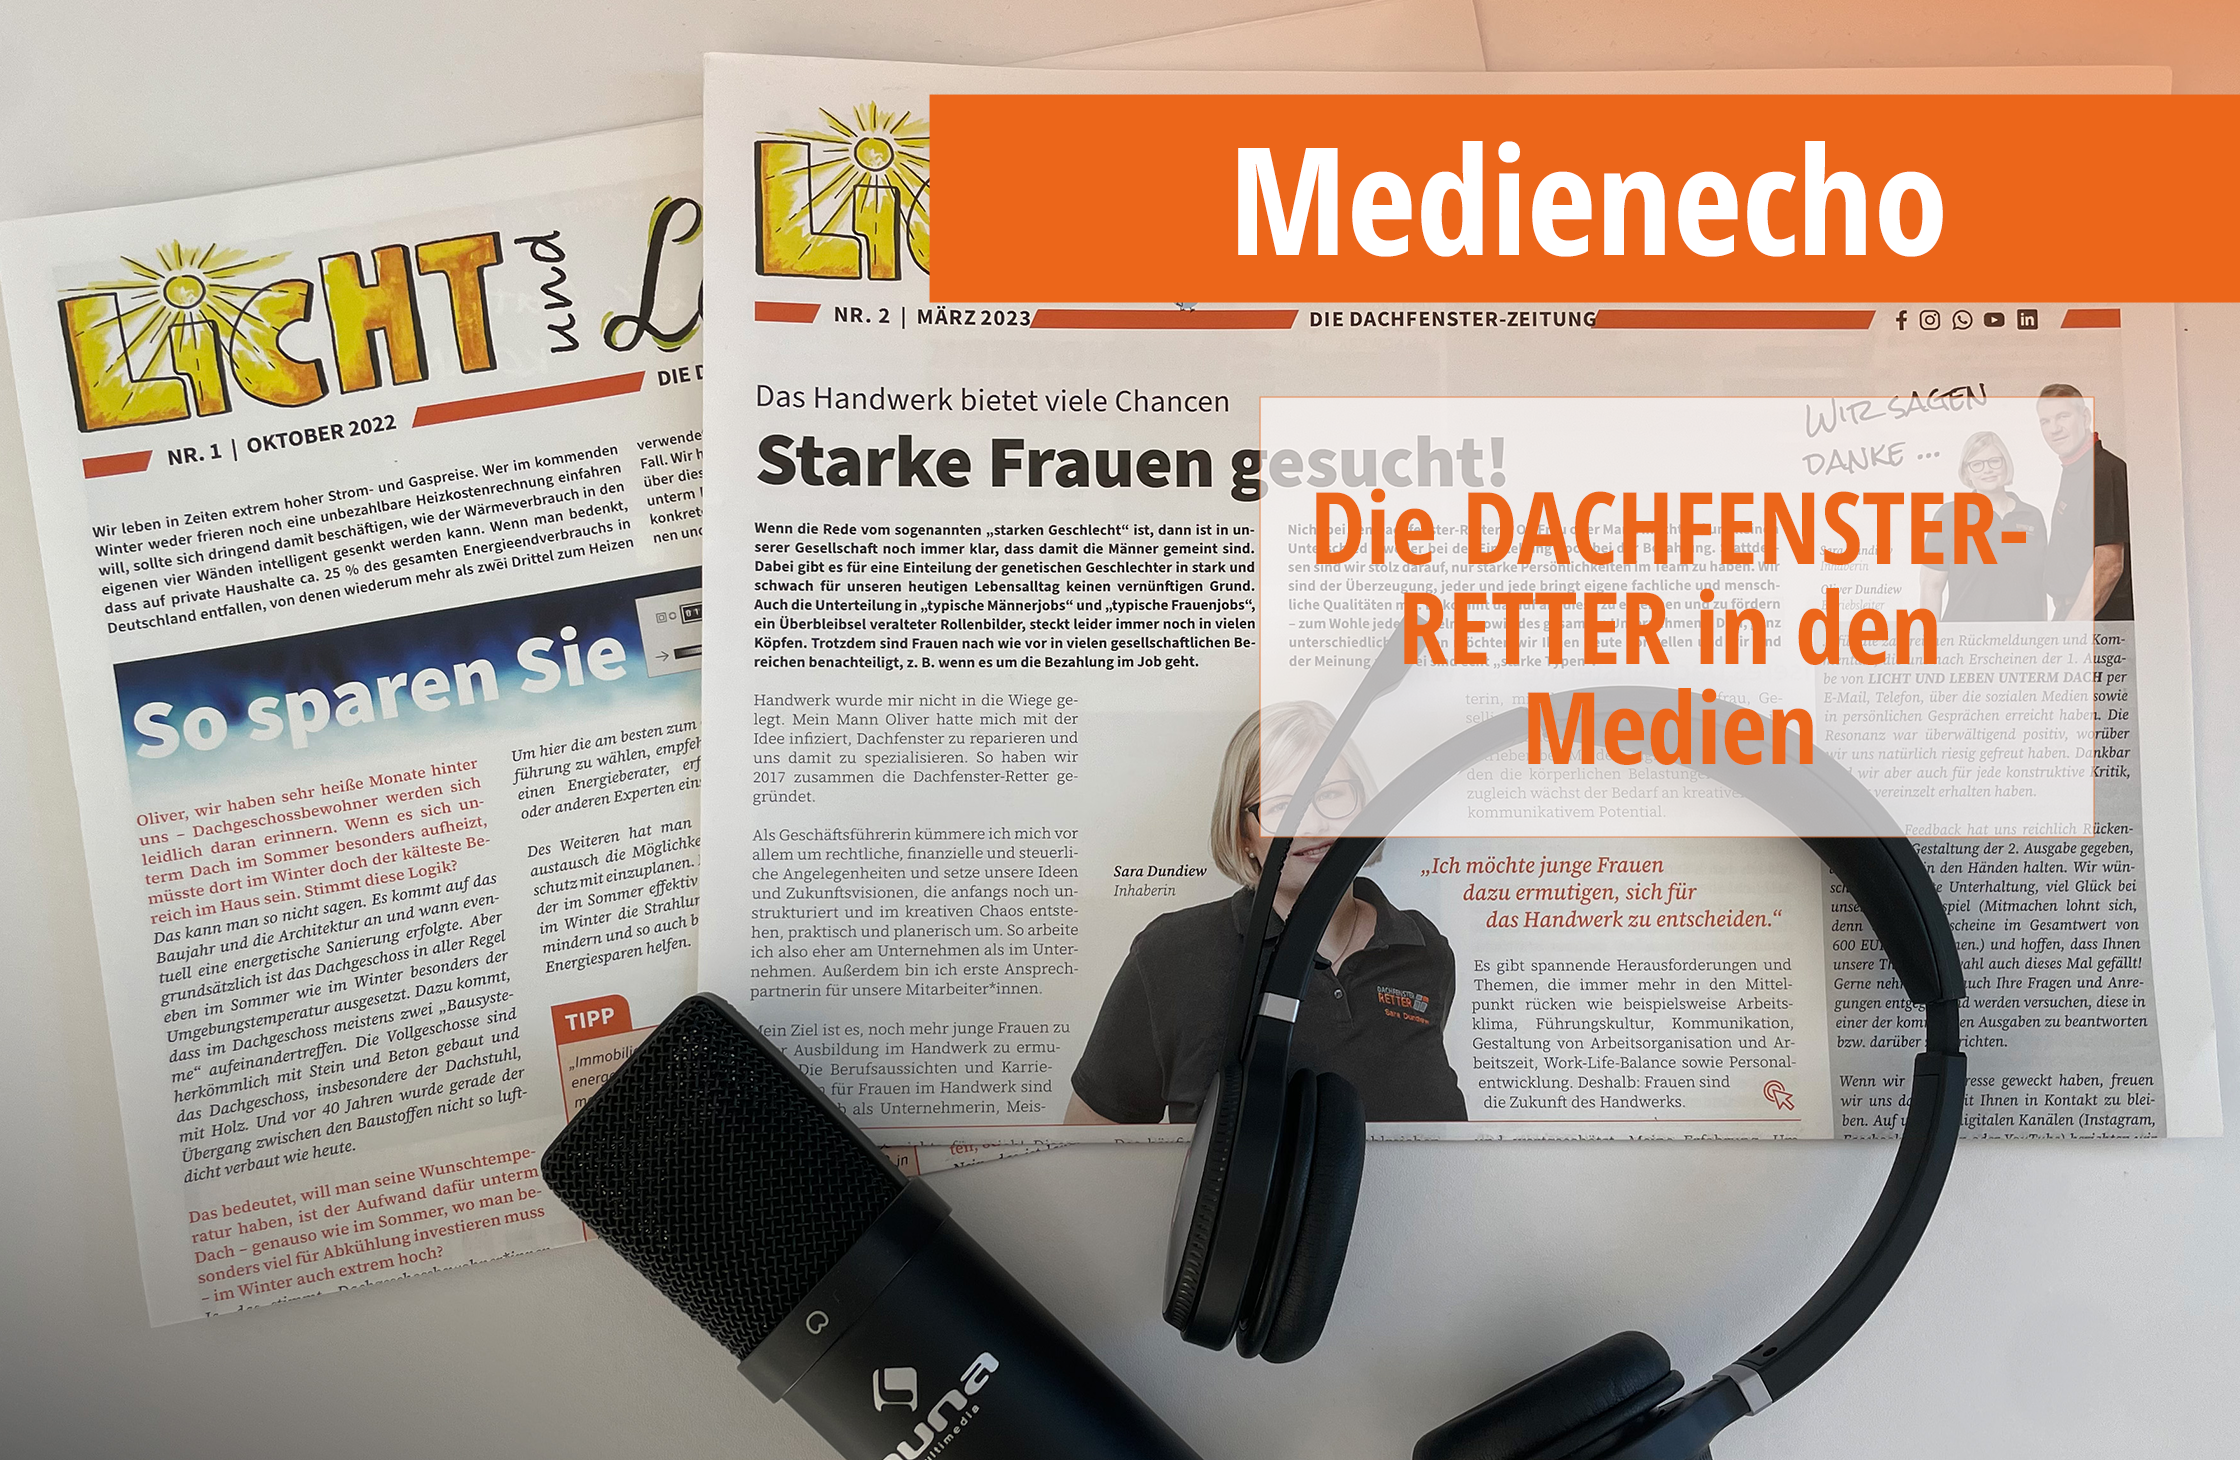 alt="Endlich ein Medienecho" - Dachfenster-Zeitung, Mikrofon und Headset auf weißem Grund